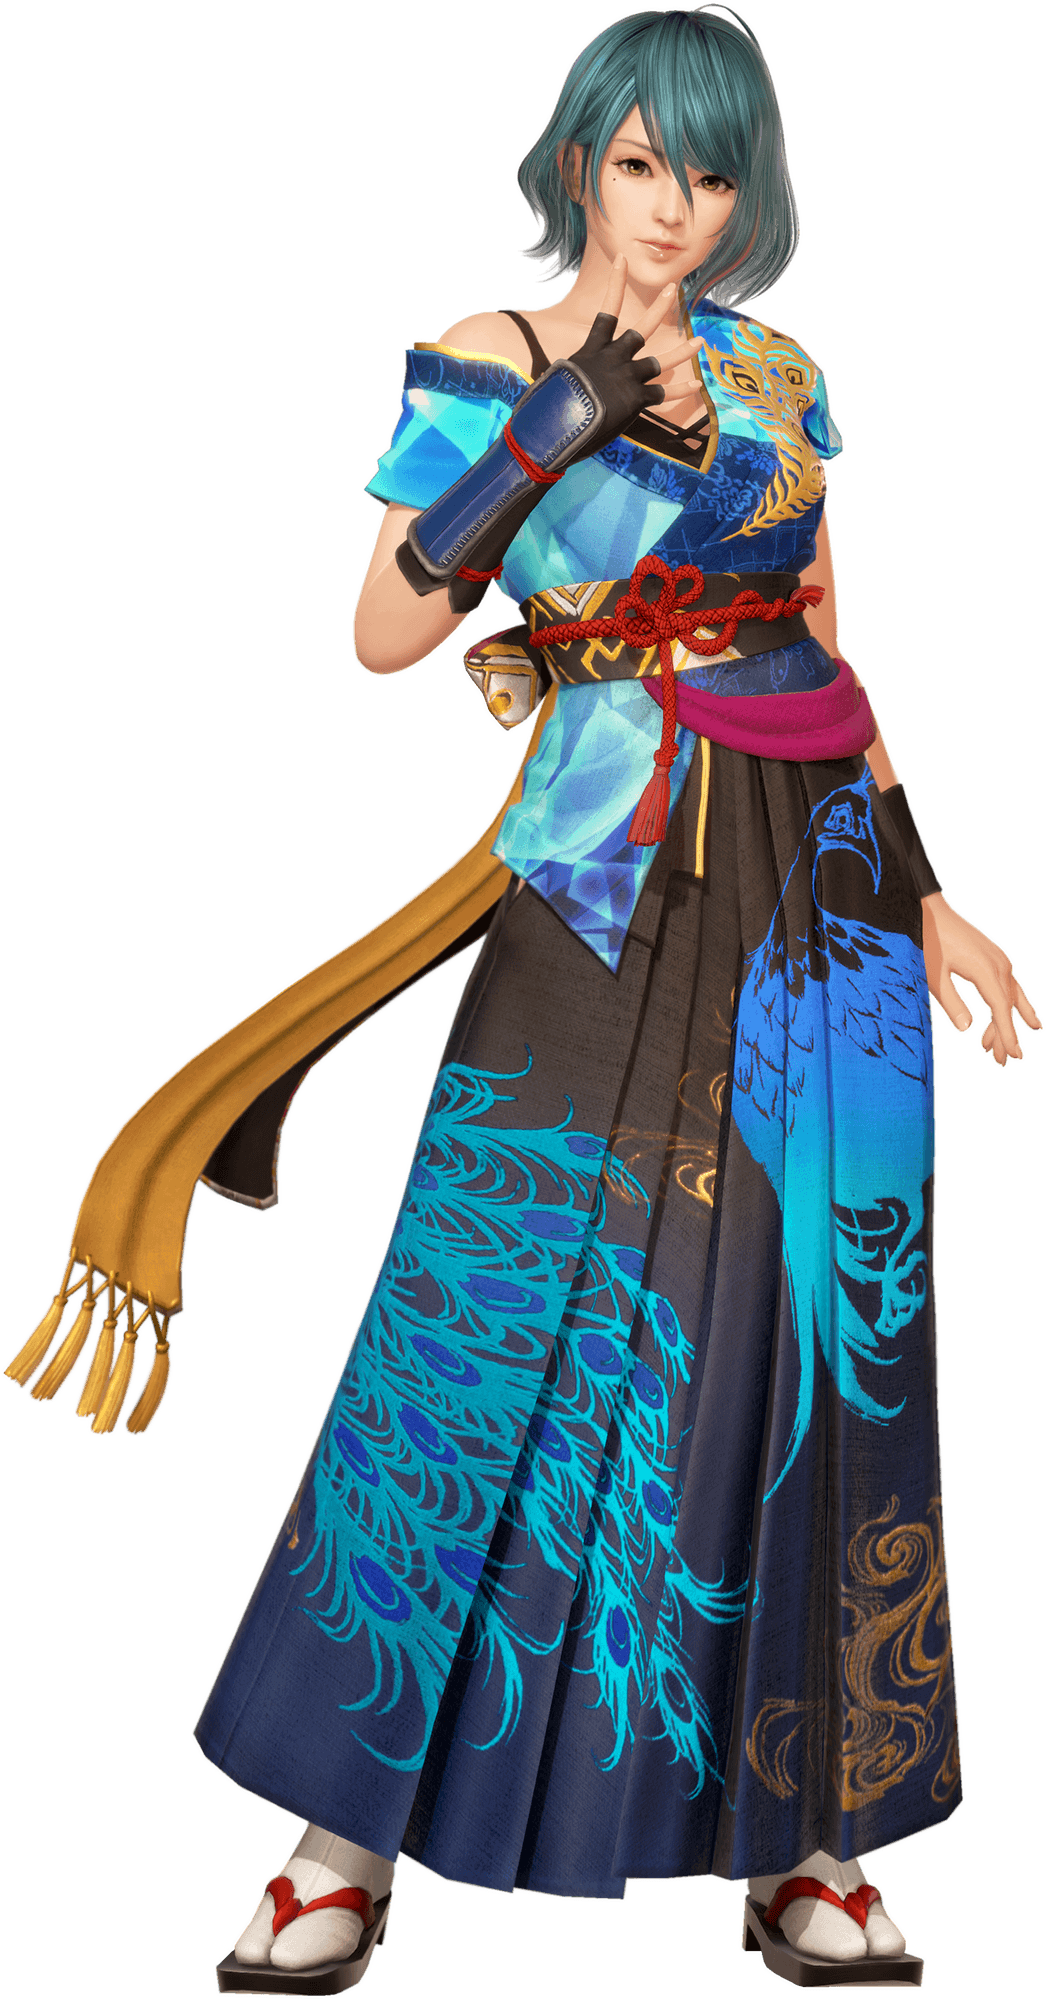 DOAXVV Shinobi Master Senran Kagura: New Link Collab Returns